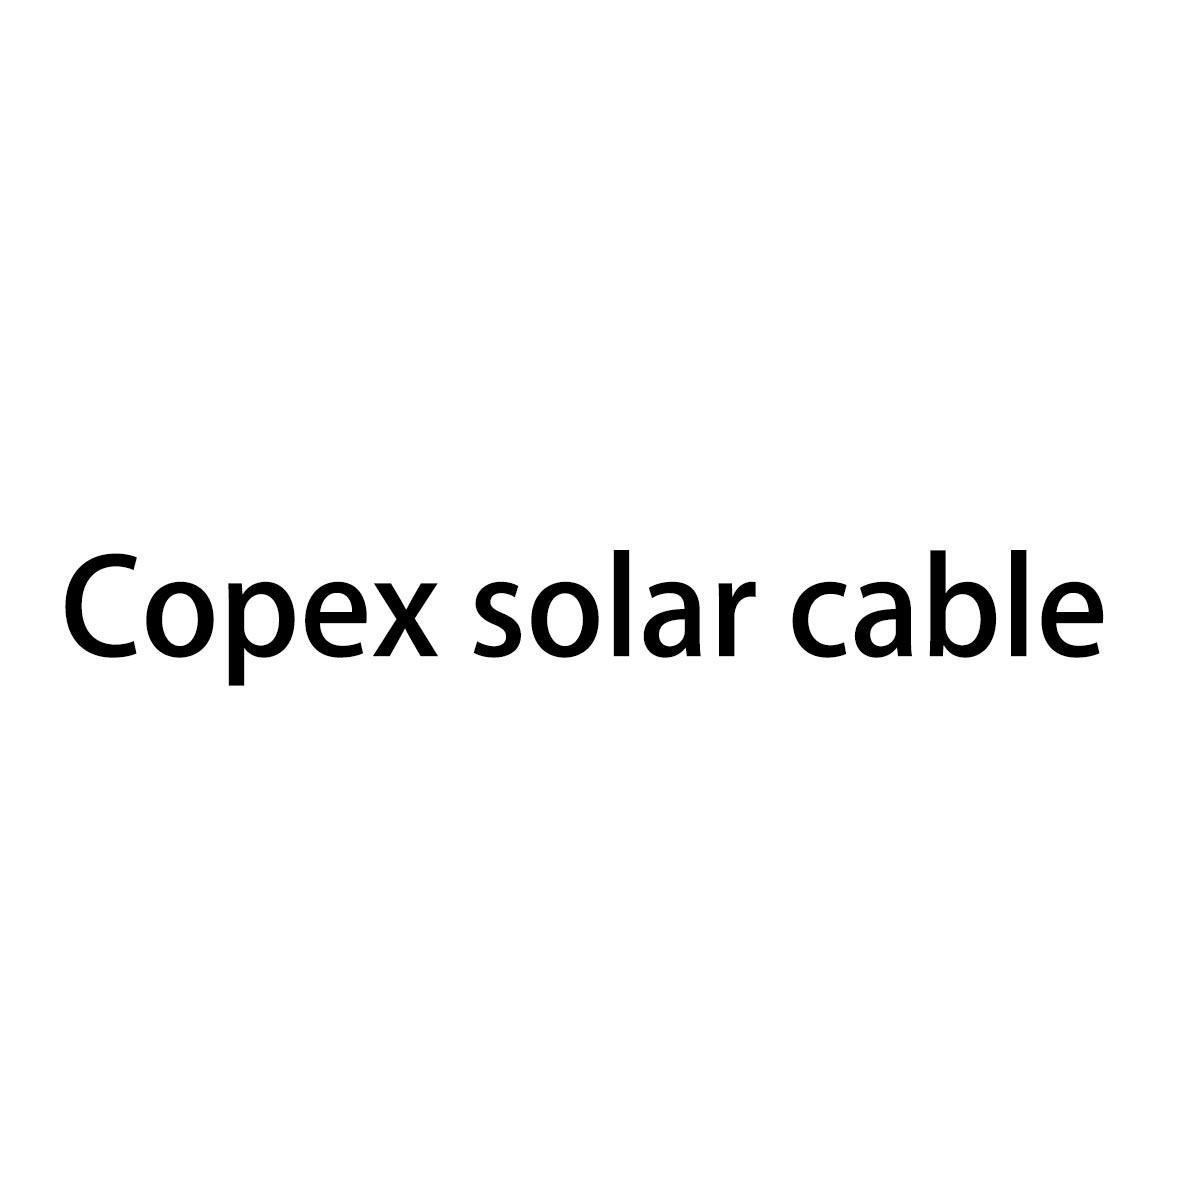 COPEX SOLAR CABLE